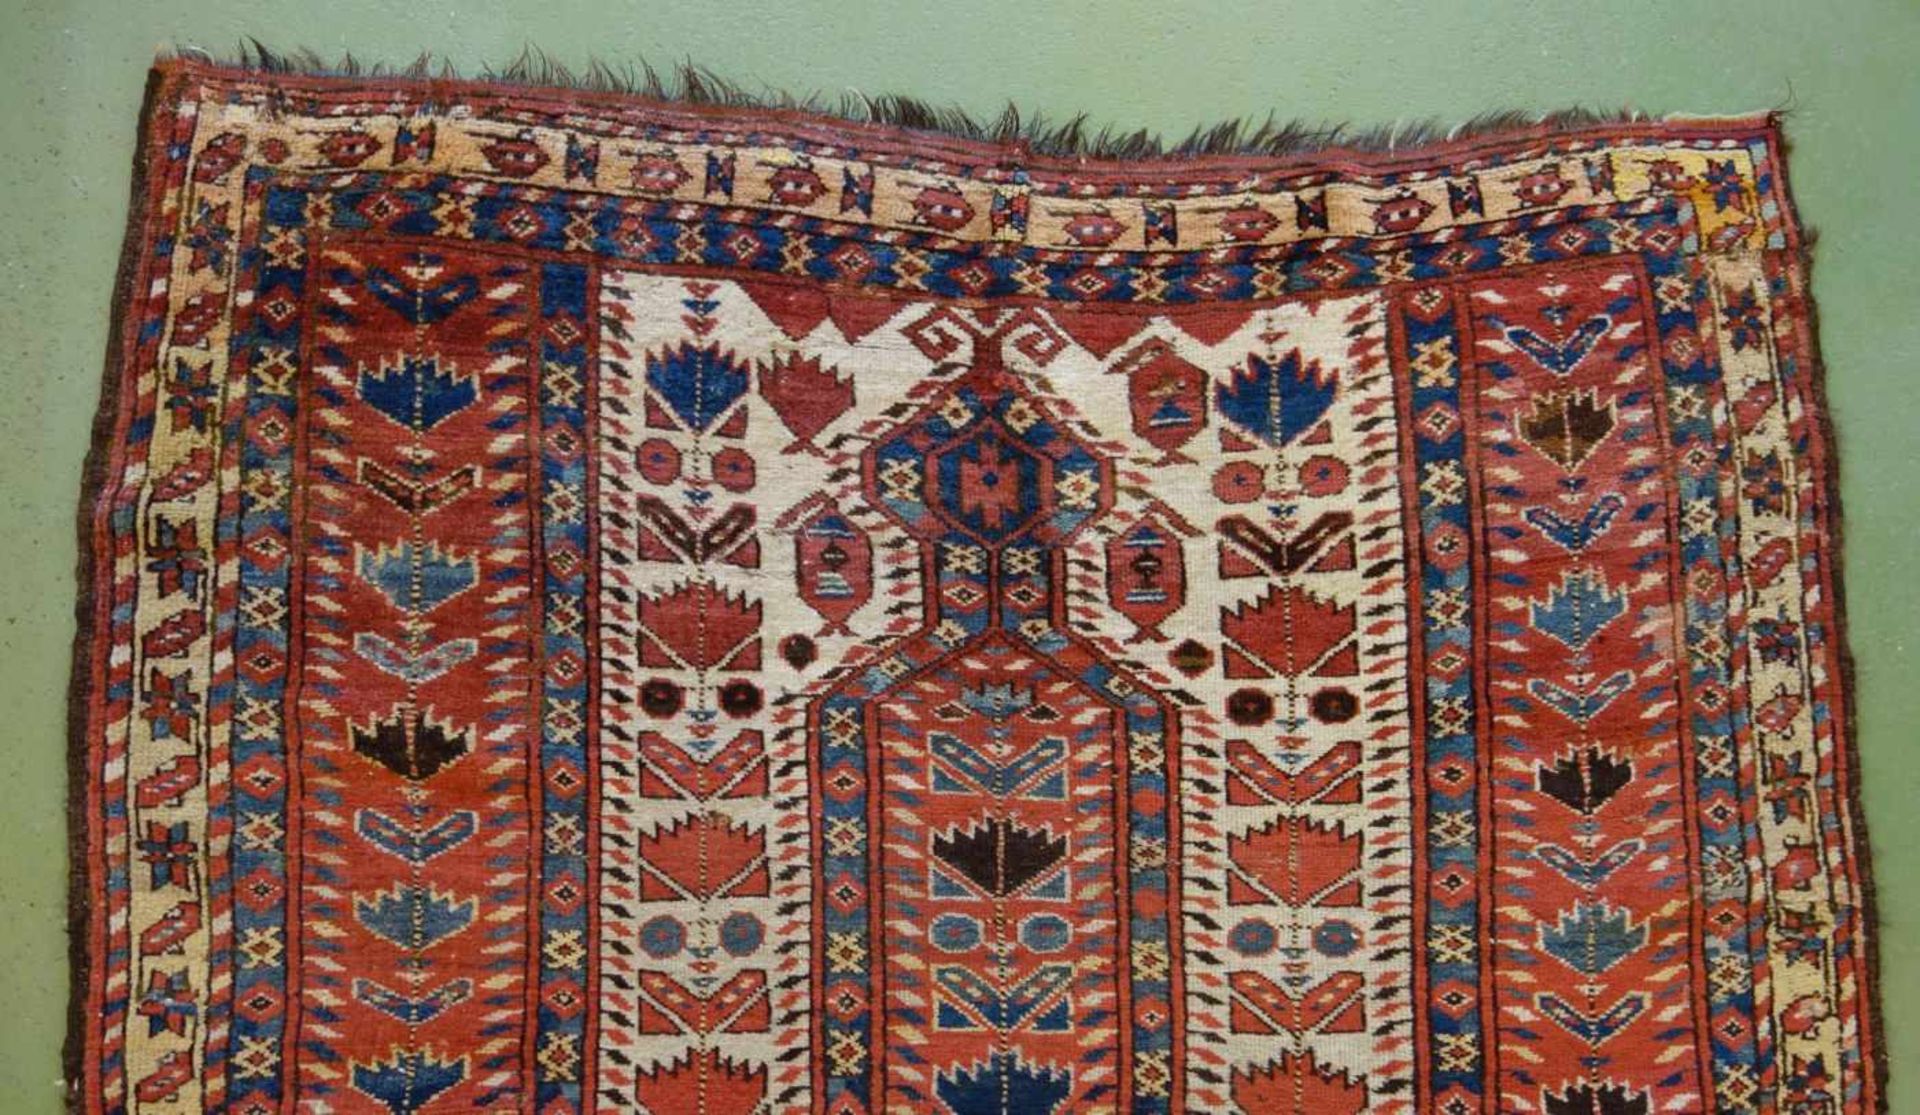 SCHMALER BESCHIR GEBETSTEPPICH / prayer rug, wohl 2. H. 19. Jh., Turkmenistan / Ersari-Beschir ( - Bild 24 aus 24